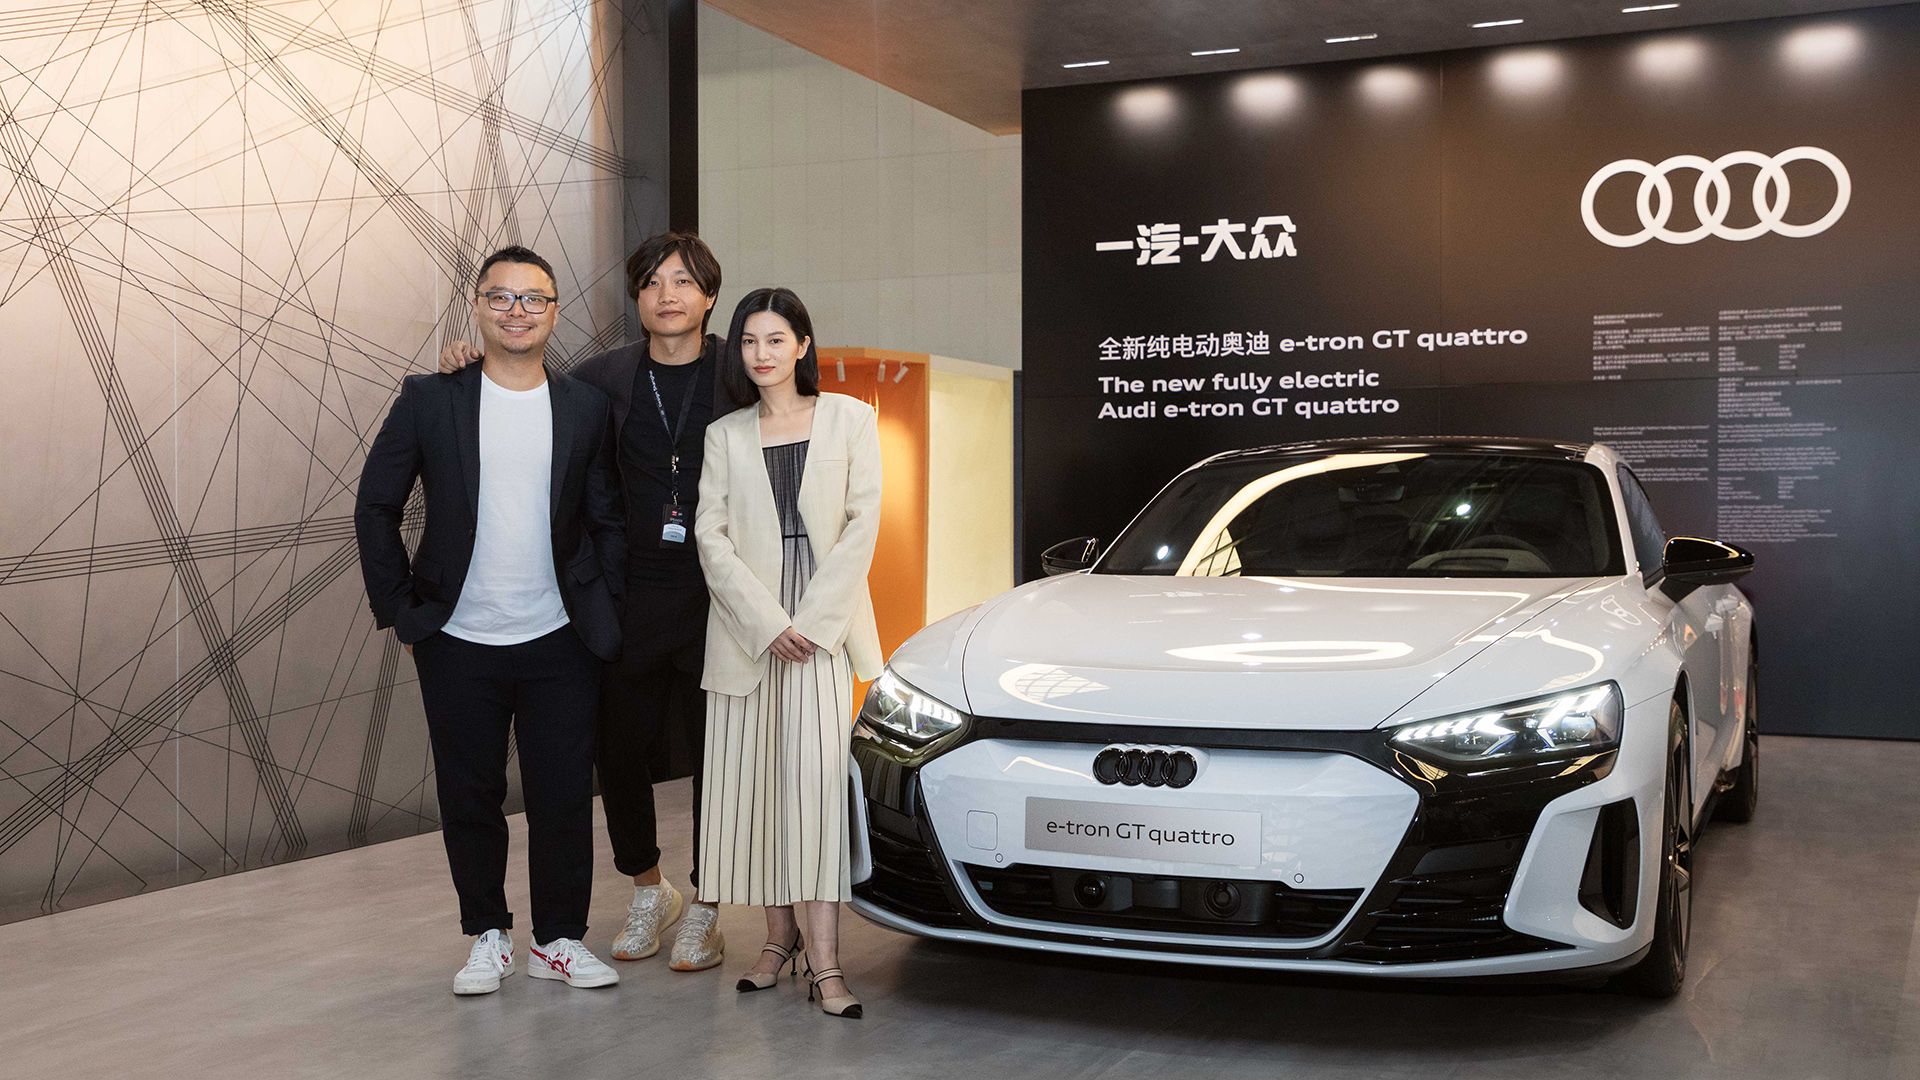 Yu (Scott) Zhao, Directeur de la recherche sur l'innovation chez Audi China, et Yunzhou Wu, Concepteur principal et coordinateur du design intérieur avec l'influenceuse Licheng Ling devant l'Audi e-tron GT quattro